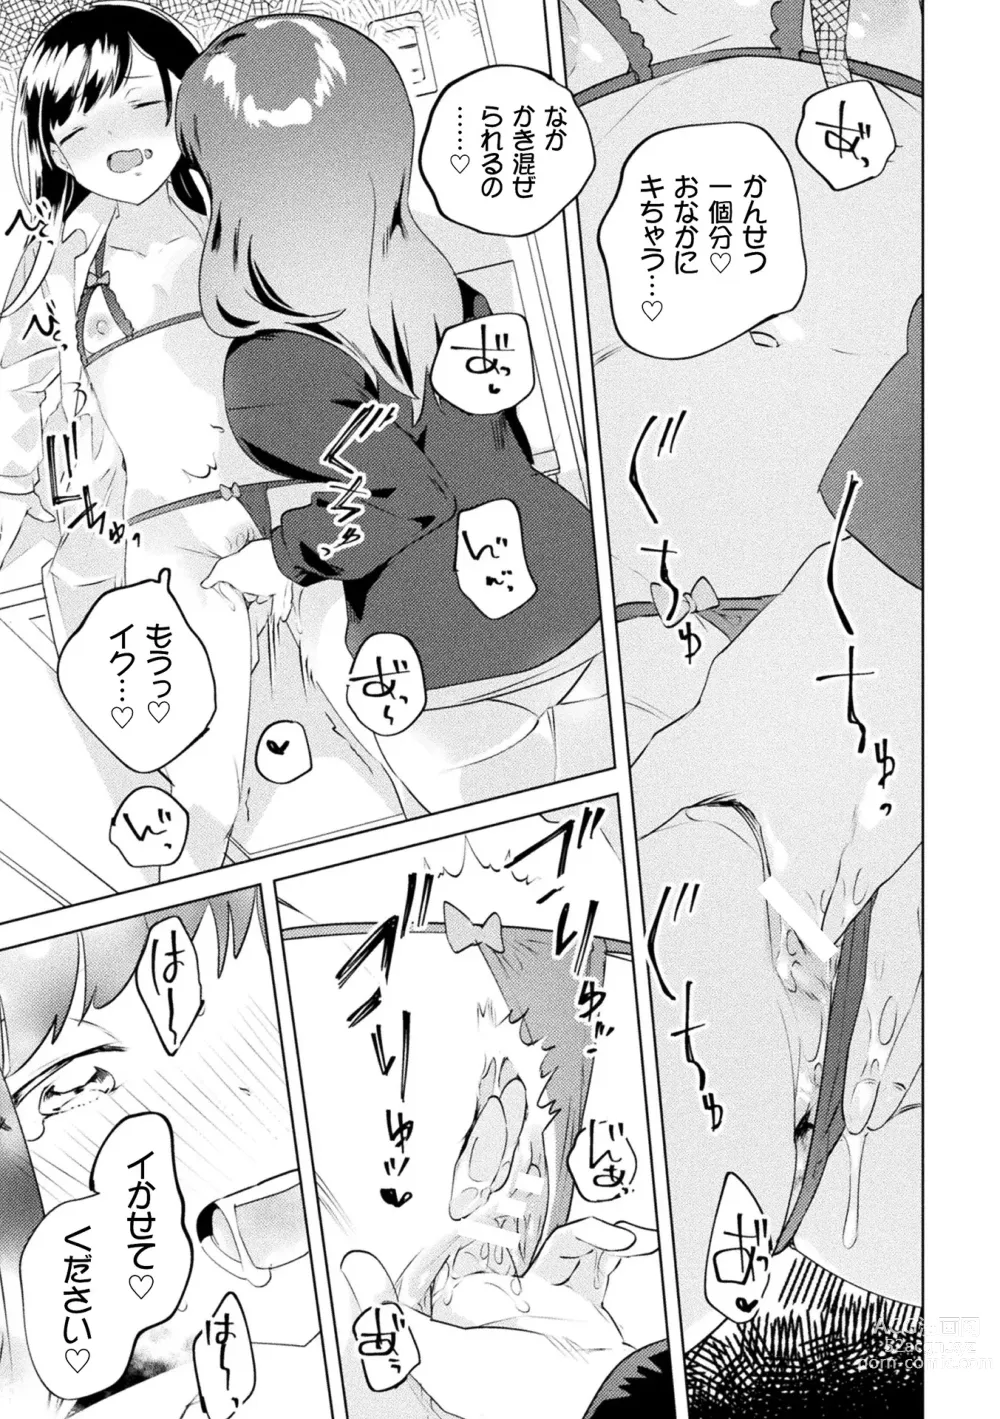 Page 17 of manga 2D Comic Magazine Mamakatsu Yuri Ecchi Vol. 3